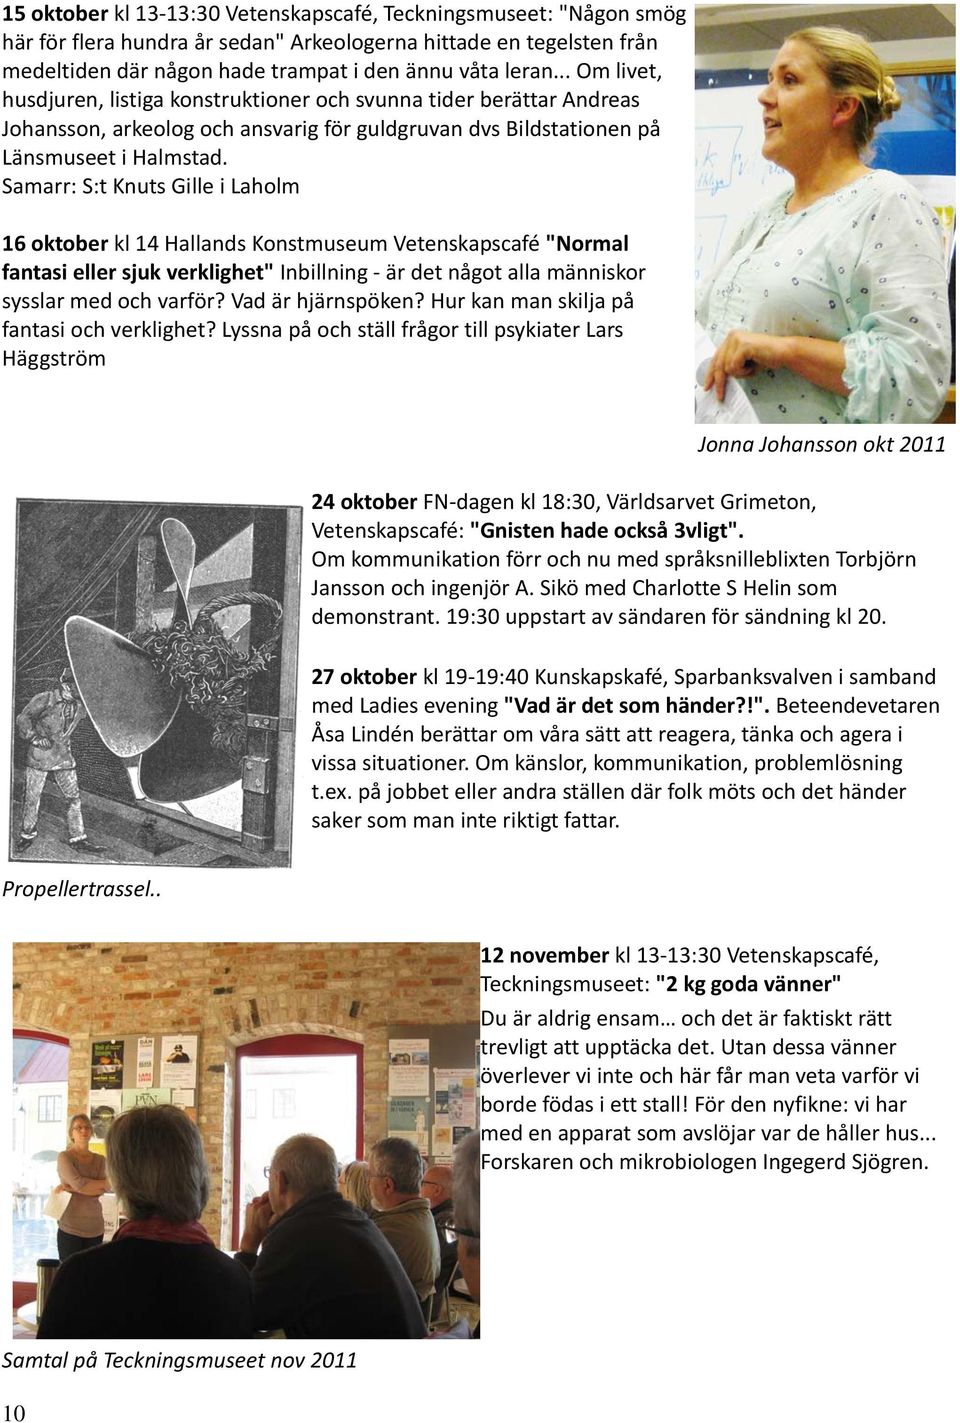 Samarr: S:t Knuts Gille i Laholm 16 oktober kl 14 Hallands Konstmuseum Vetenskapscafé "Normal fantasi eller sjuk verklighet" Inbillning är det något alla människor sysslar med och varför?